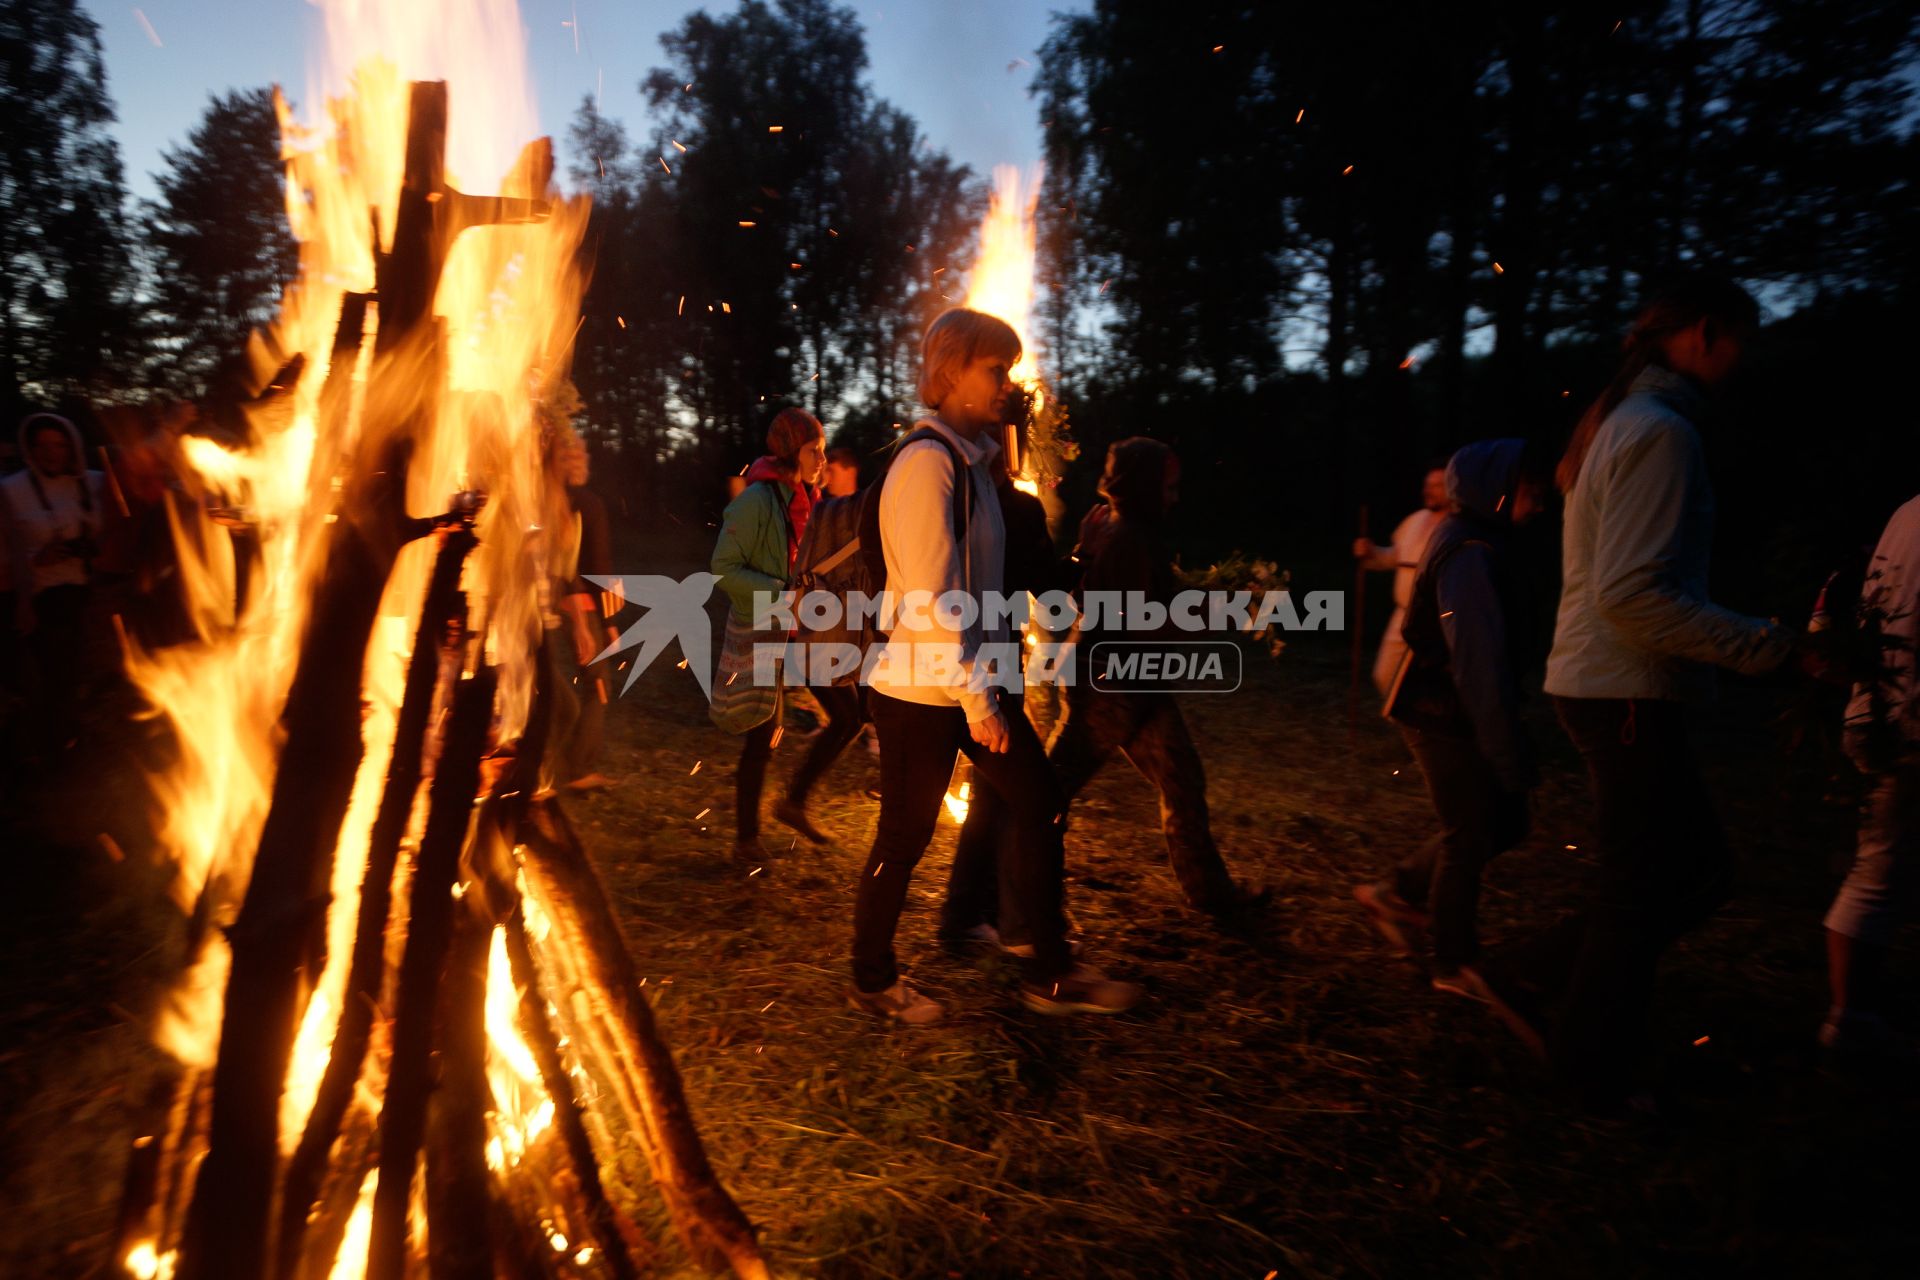 Участники празднования дня Ивана Купала во время обряда очищения огнем проходят между двух больших костров